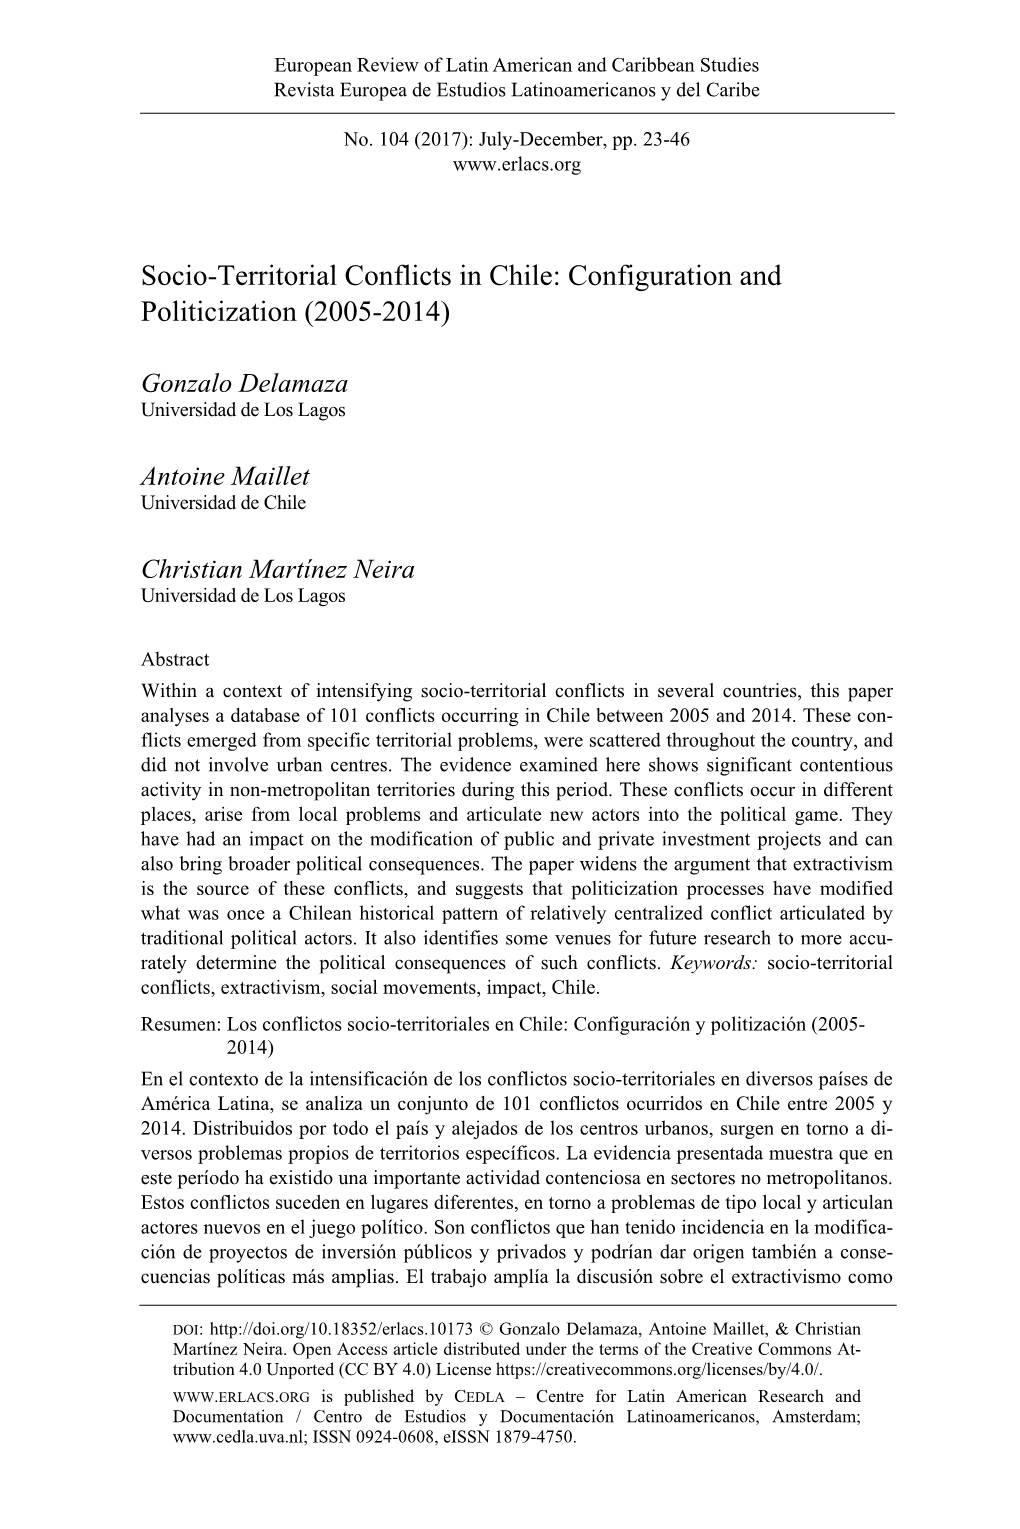 Socio-Territorial Conflicts in Chile: Configuration and Politicization (2005-2014)